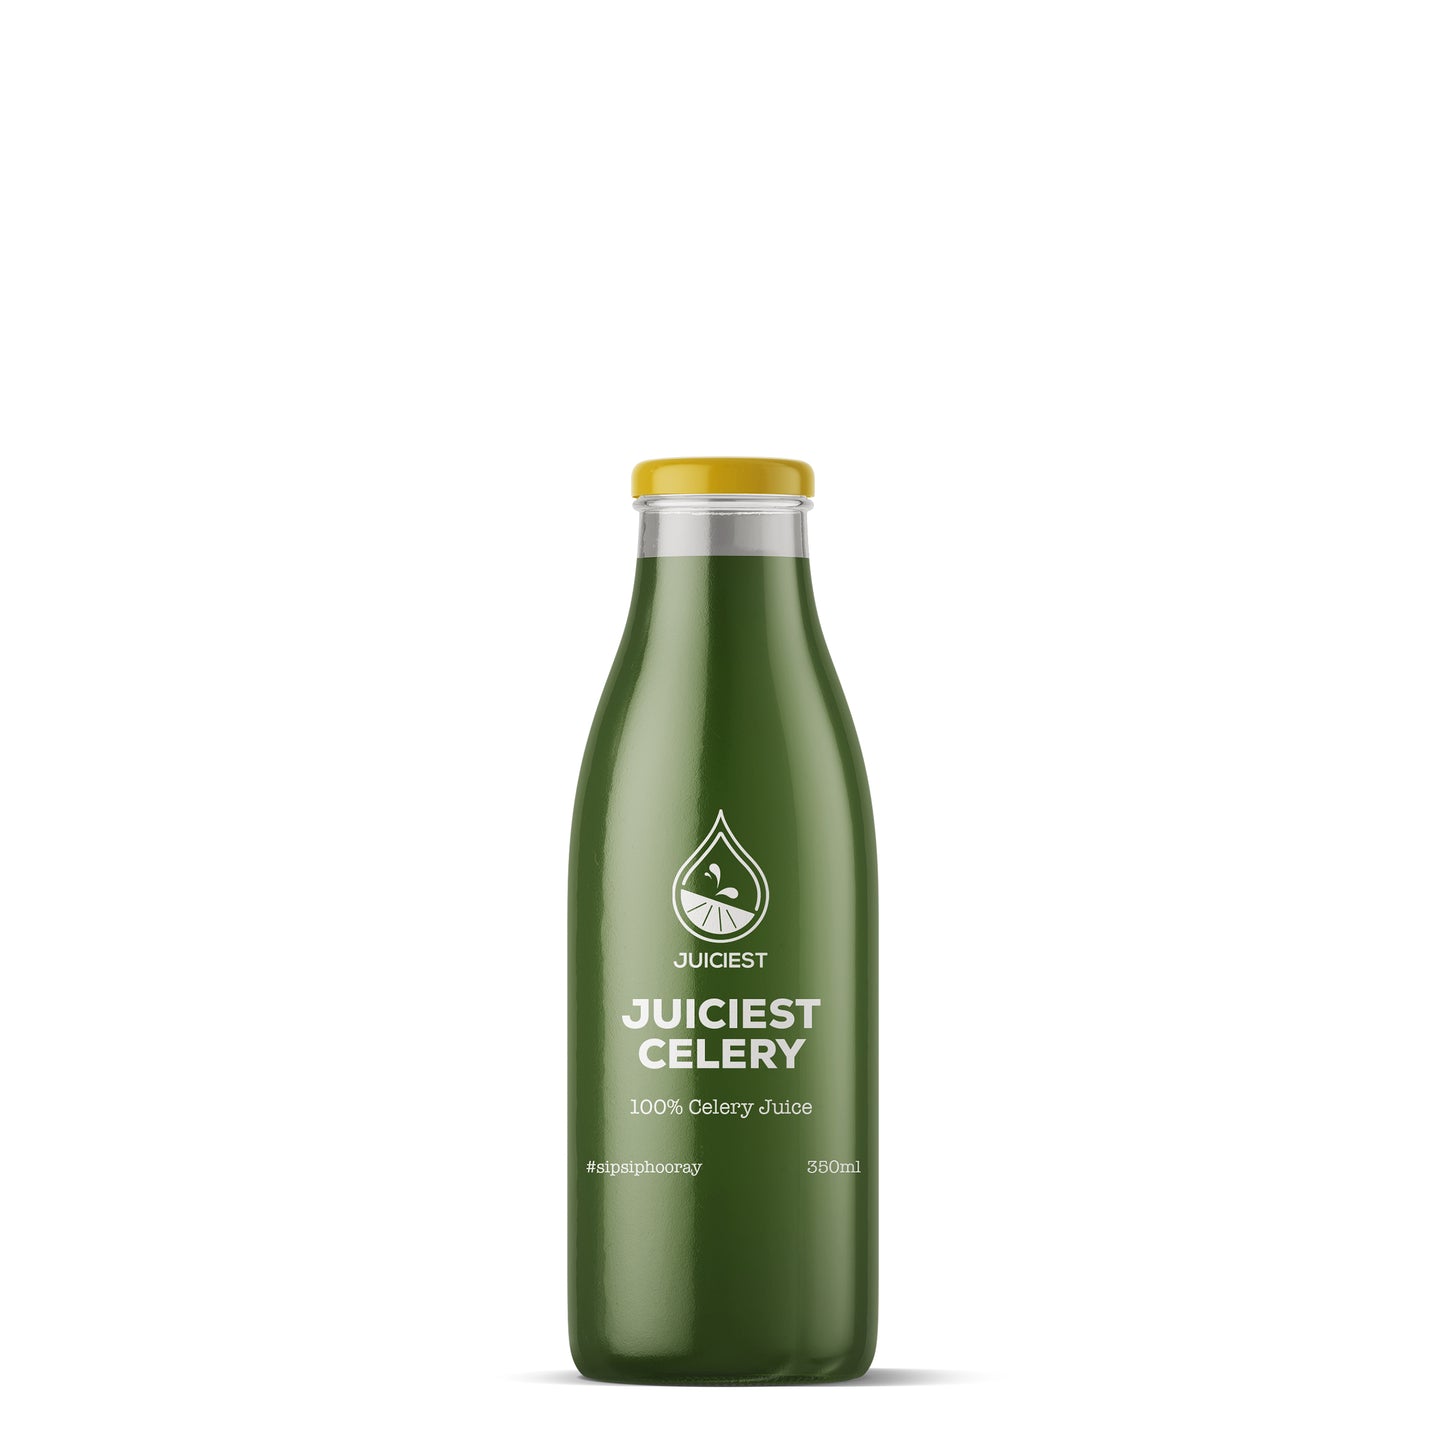 Juiciest Celery 350ml bottle